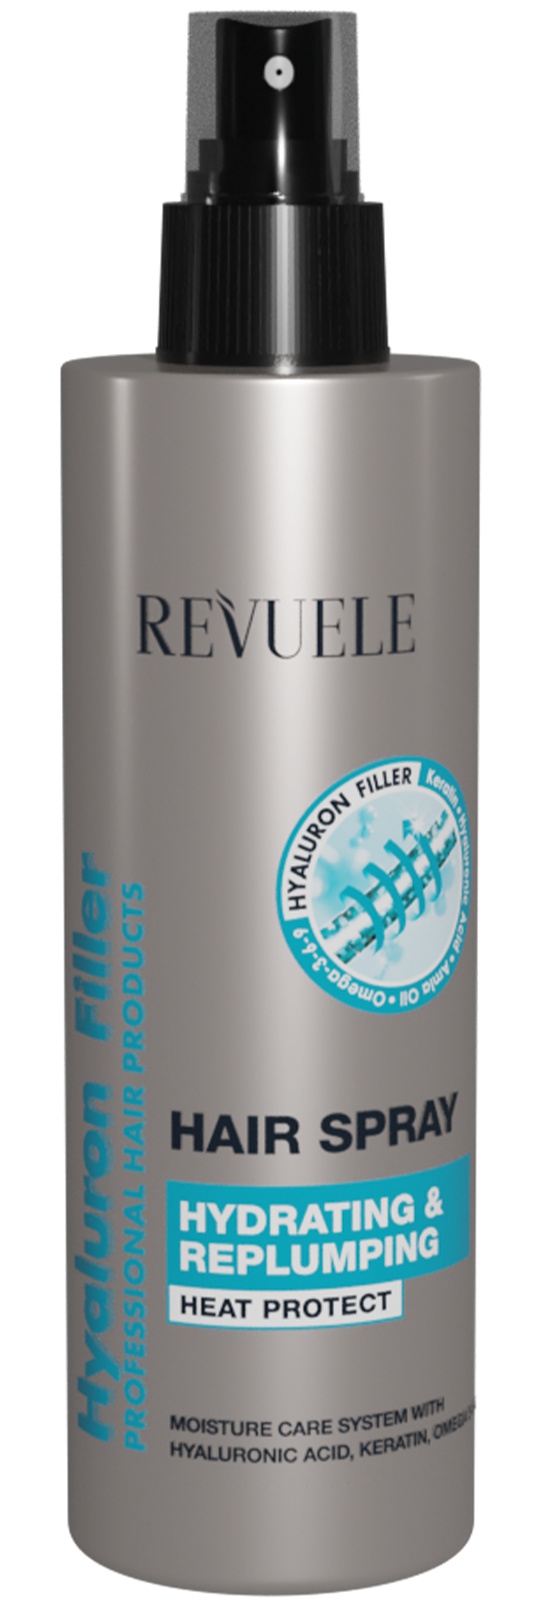 Revuele Hyaluron Filler Hair Spray